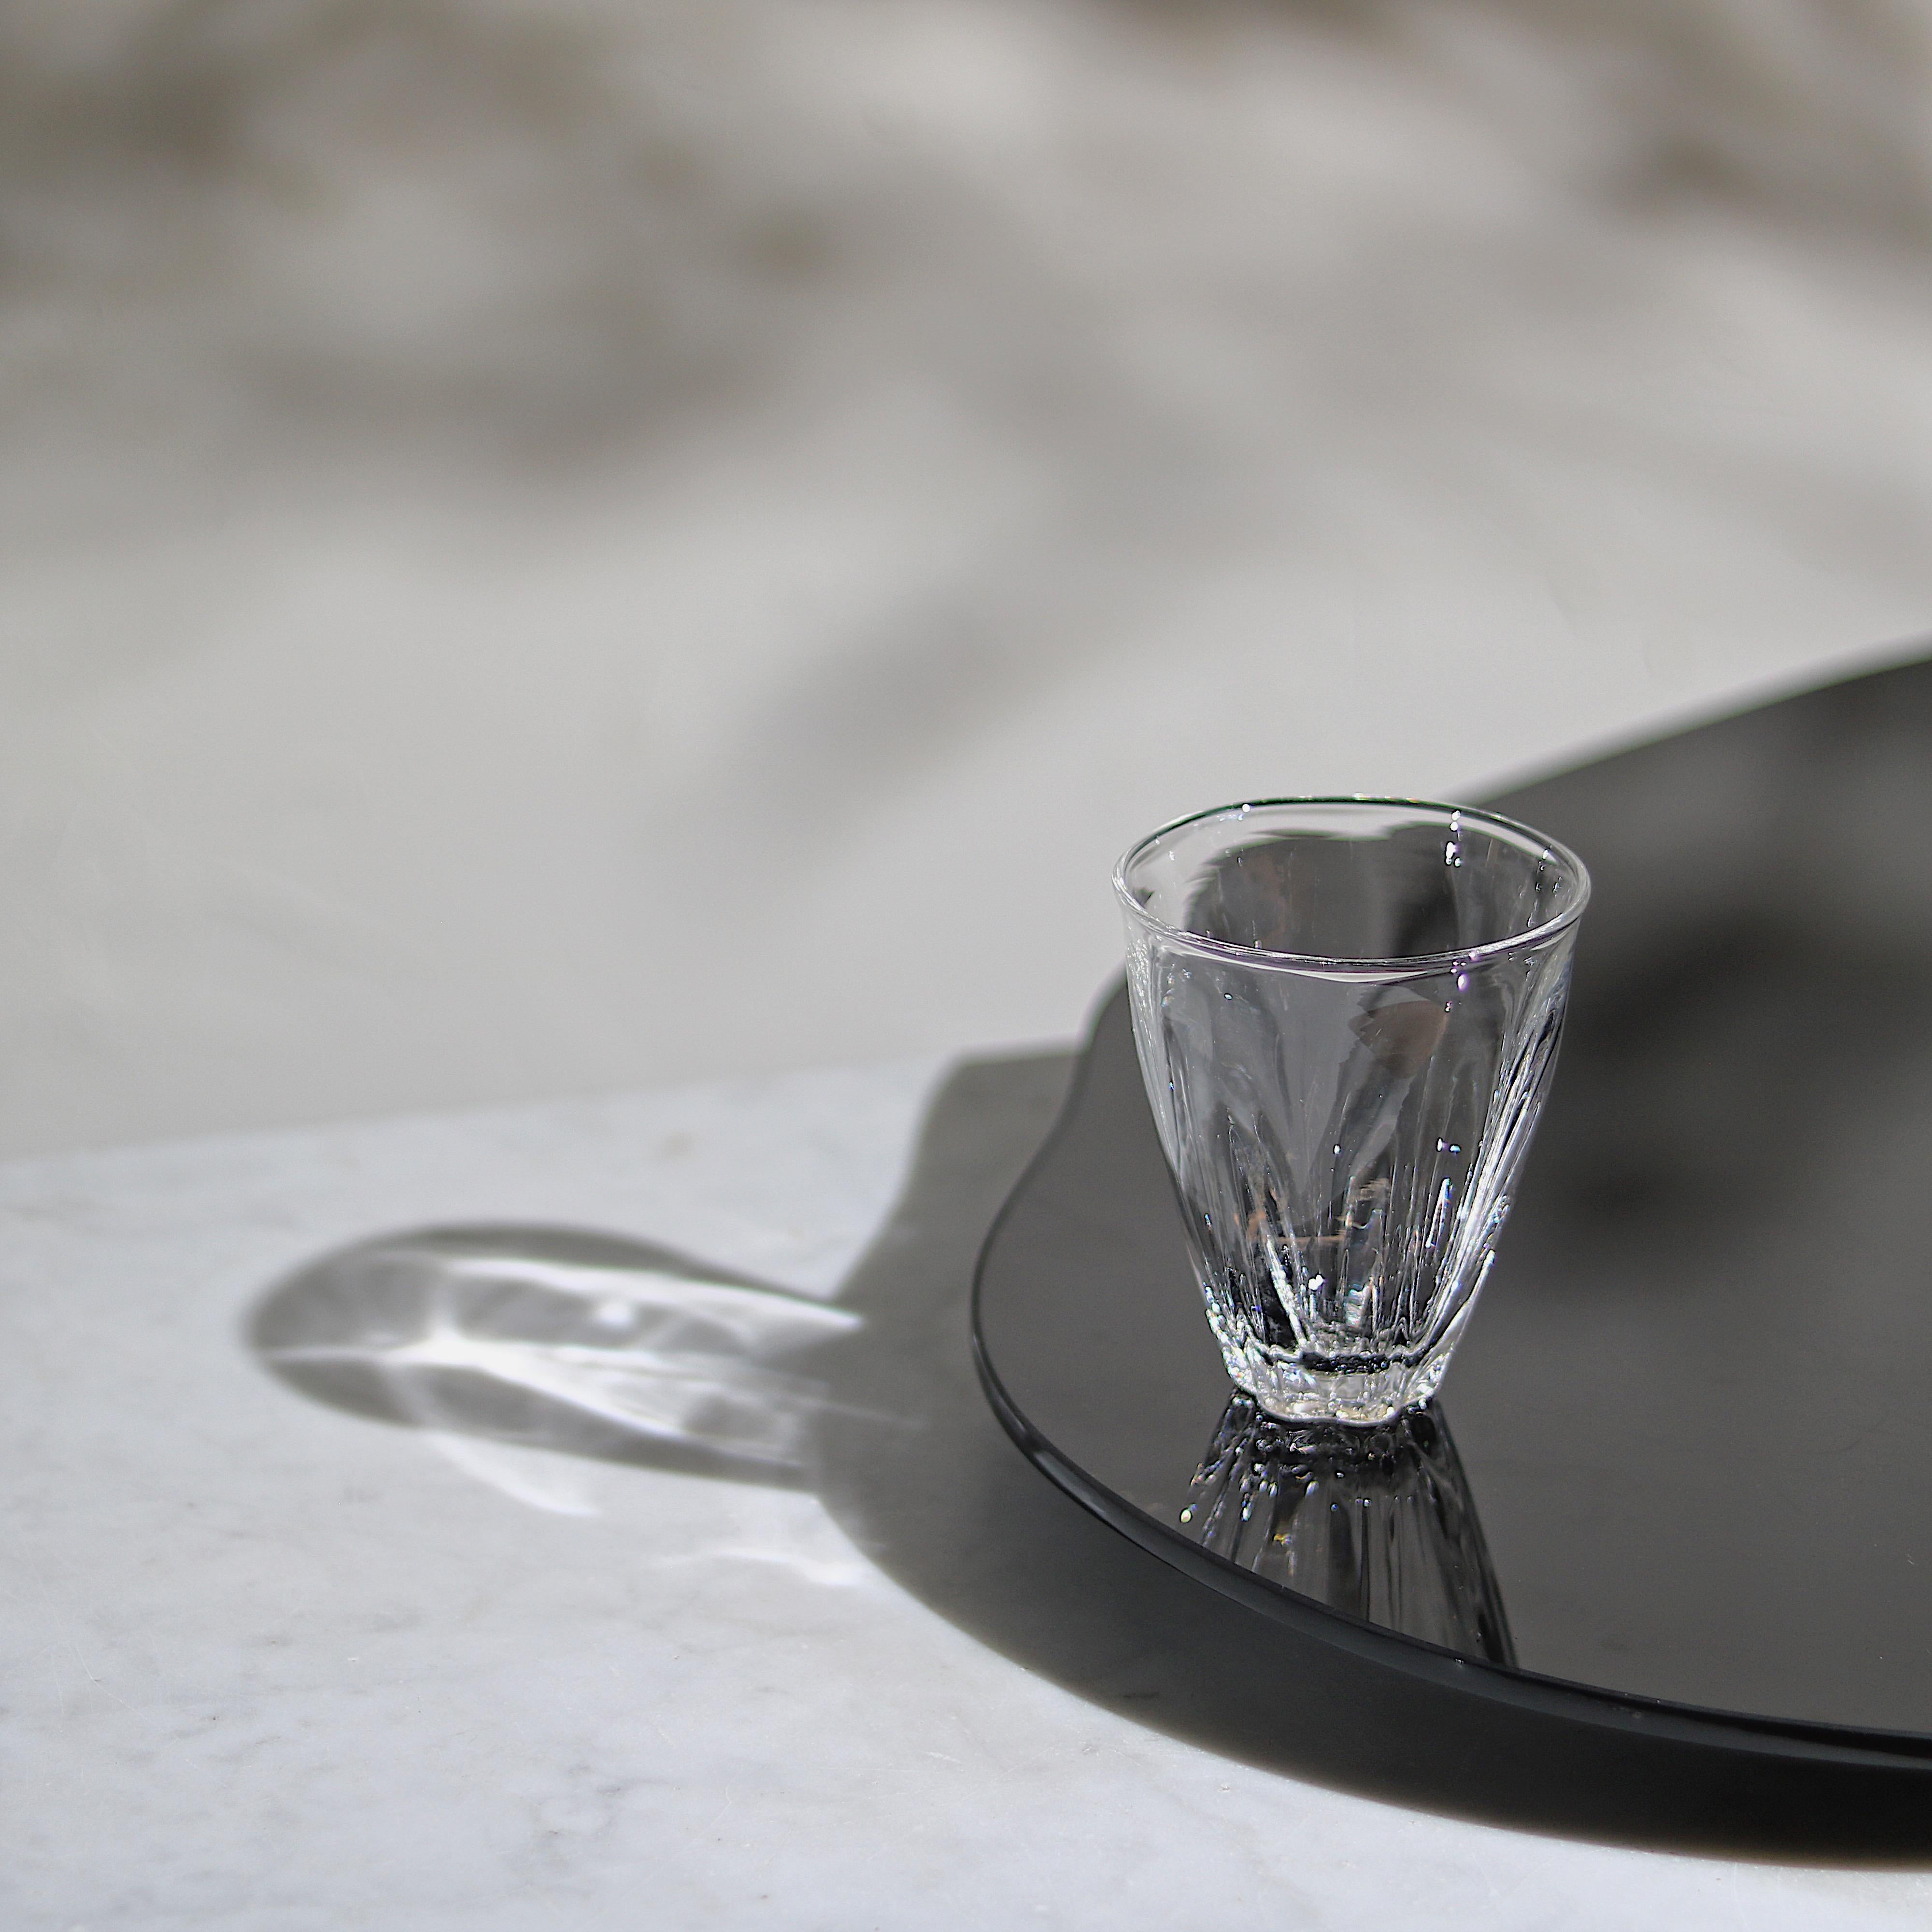 Ein stapelbares, mundgeblasenes Glas, das vom Espresso bis zum Dubonnet alles in der gleichen formschlüssigen Silhouette liefert.